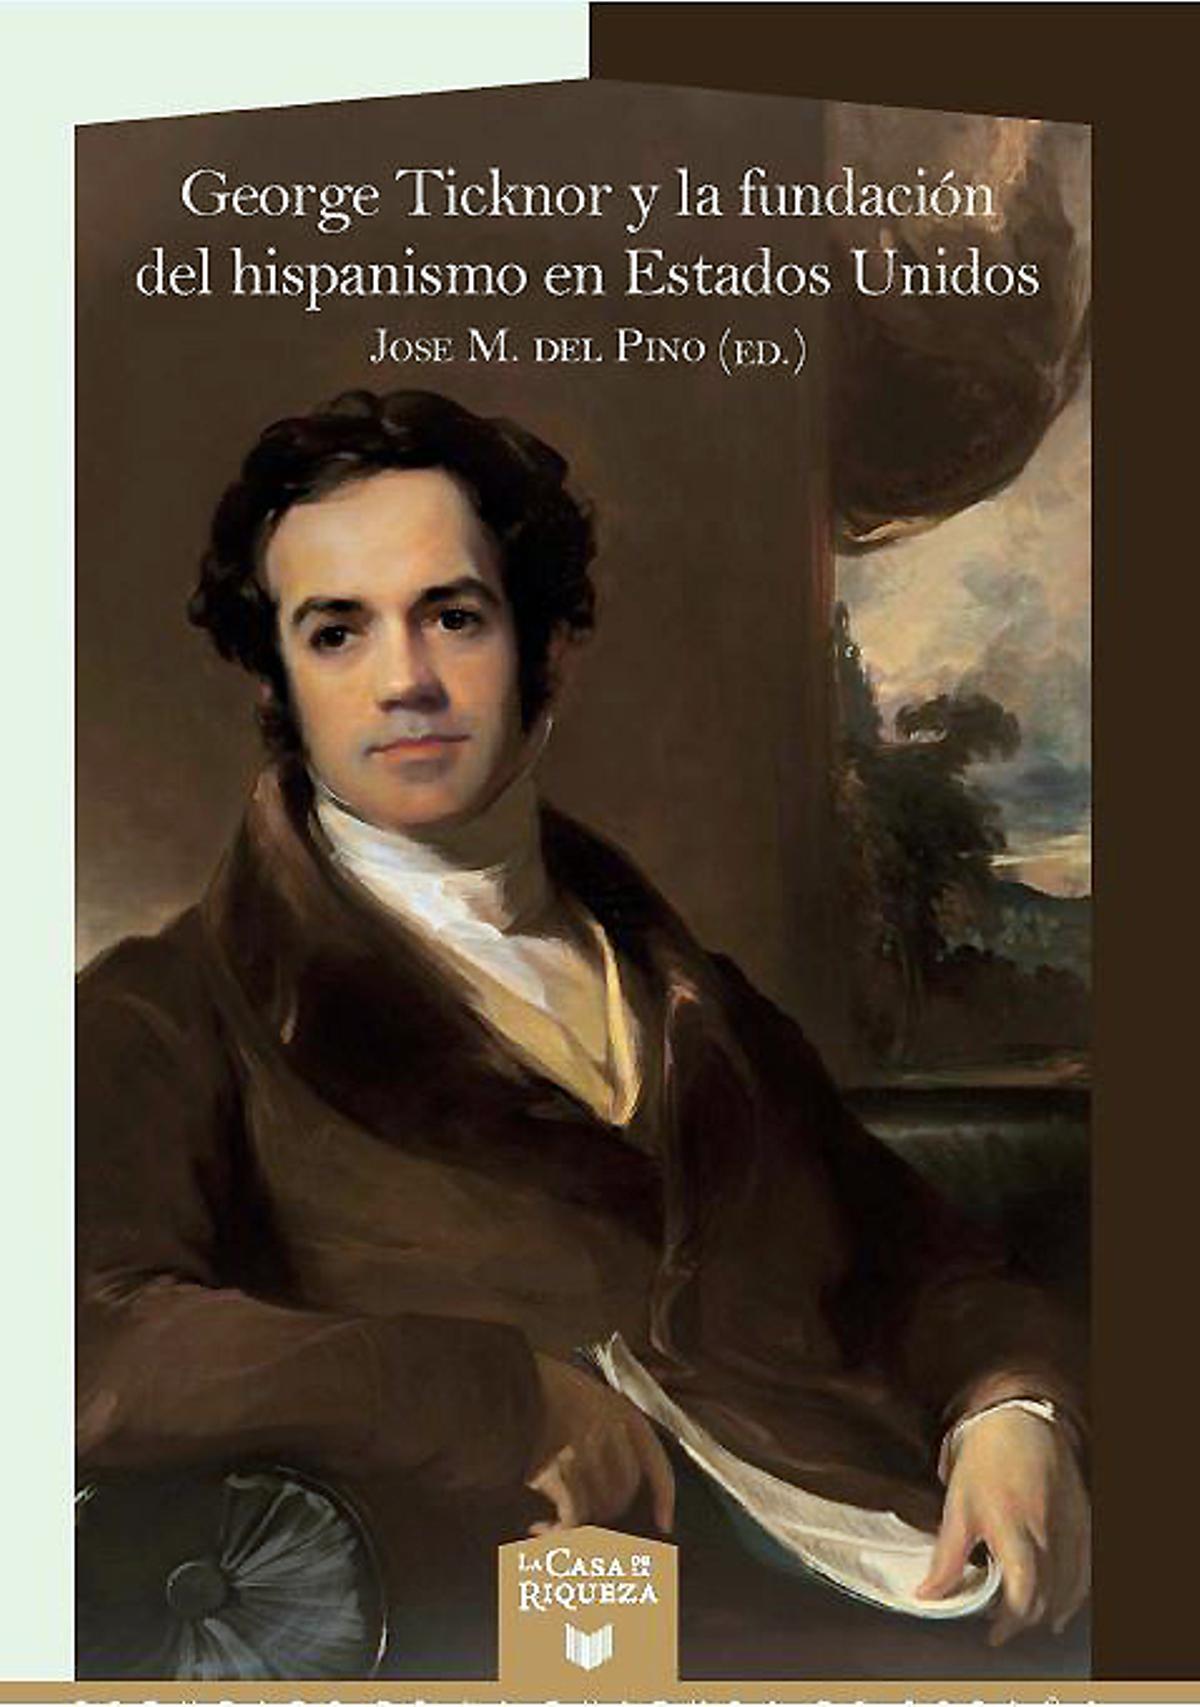 Portada de la obra coordinada por José Manuel del Pino, con un retrato de George Ticknor.